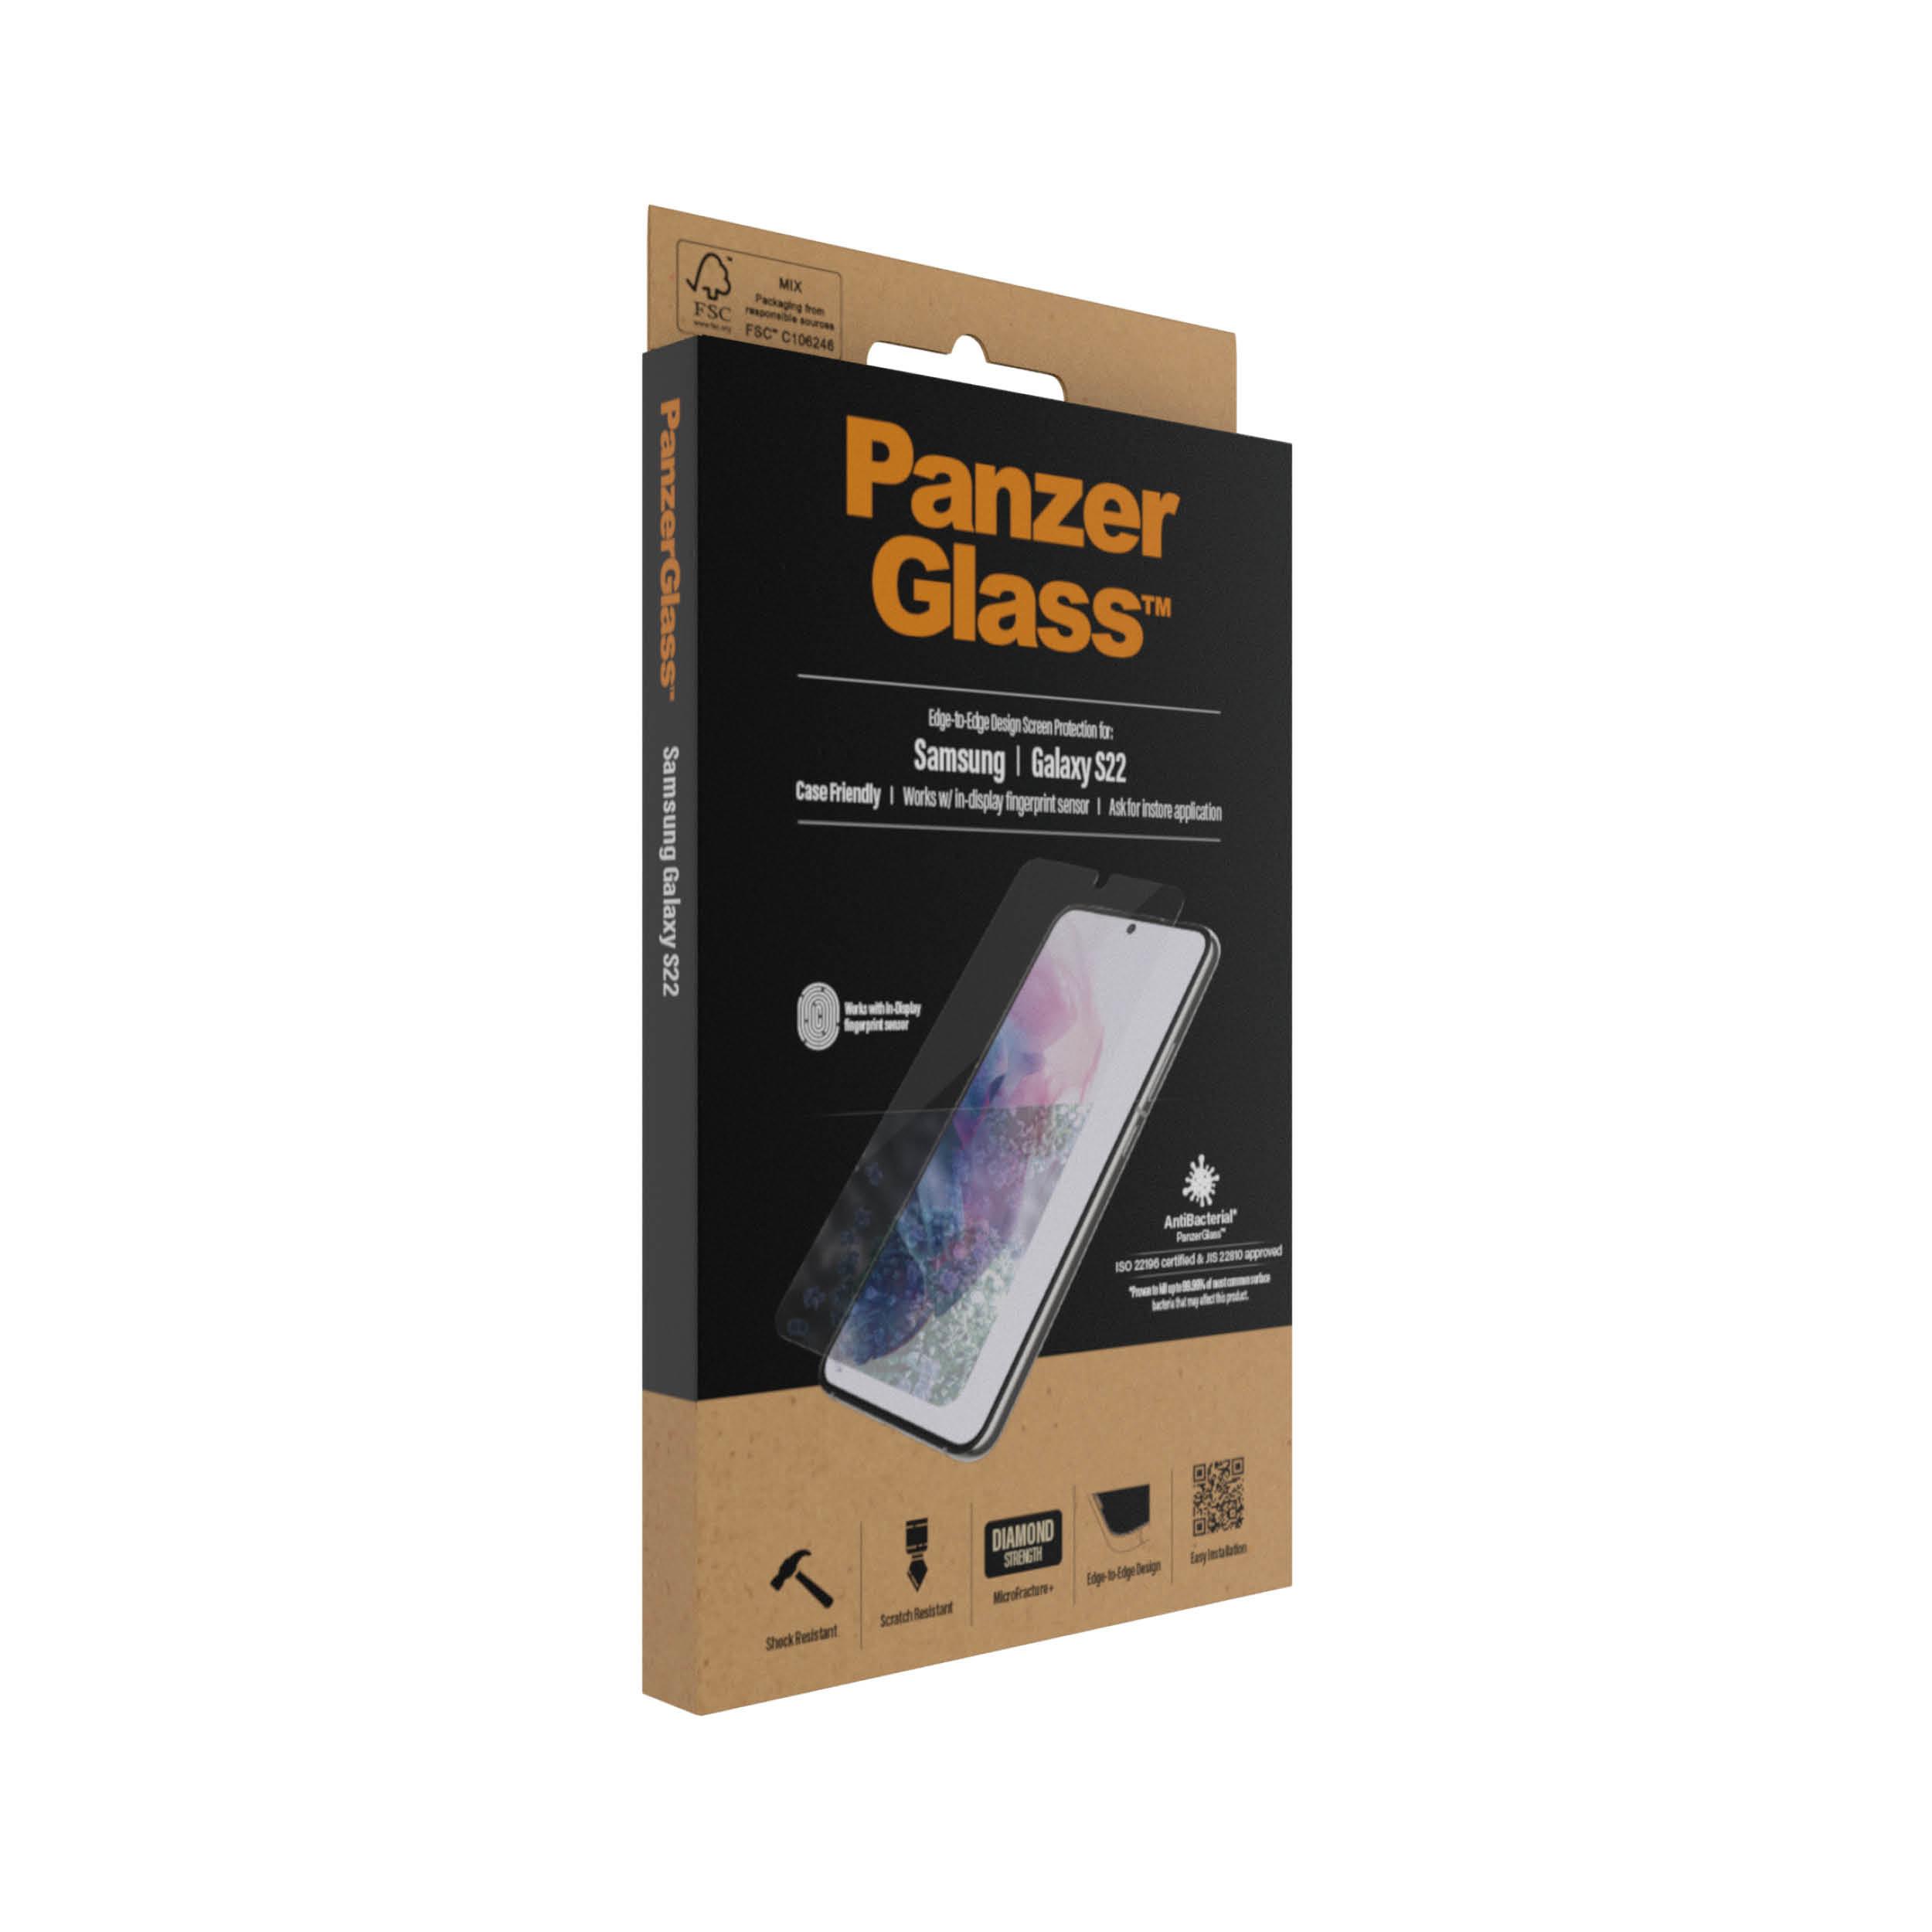 PanzerGlass  7293 protezione per lo schermo e il retro dei telefoni cellulari Pellicola proteggischermo trasparente Samsung 1 pz 